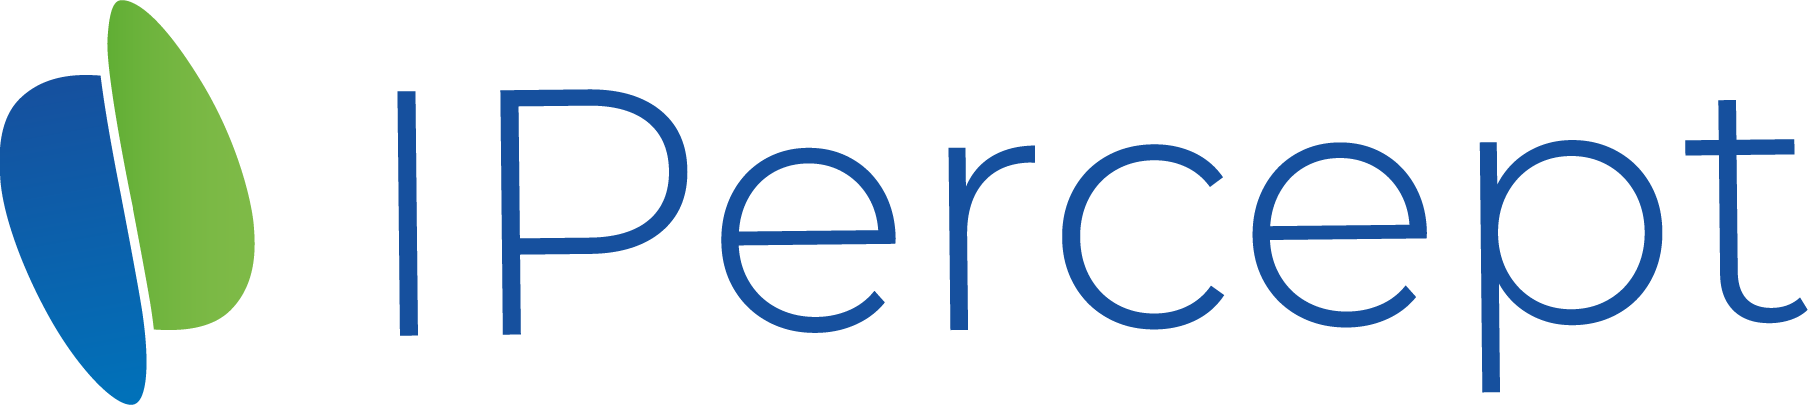 IPercept Technology AB logo